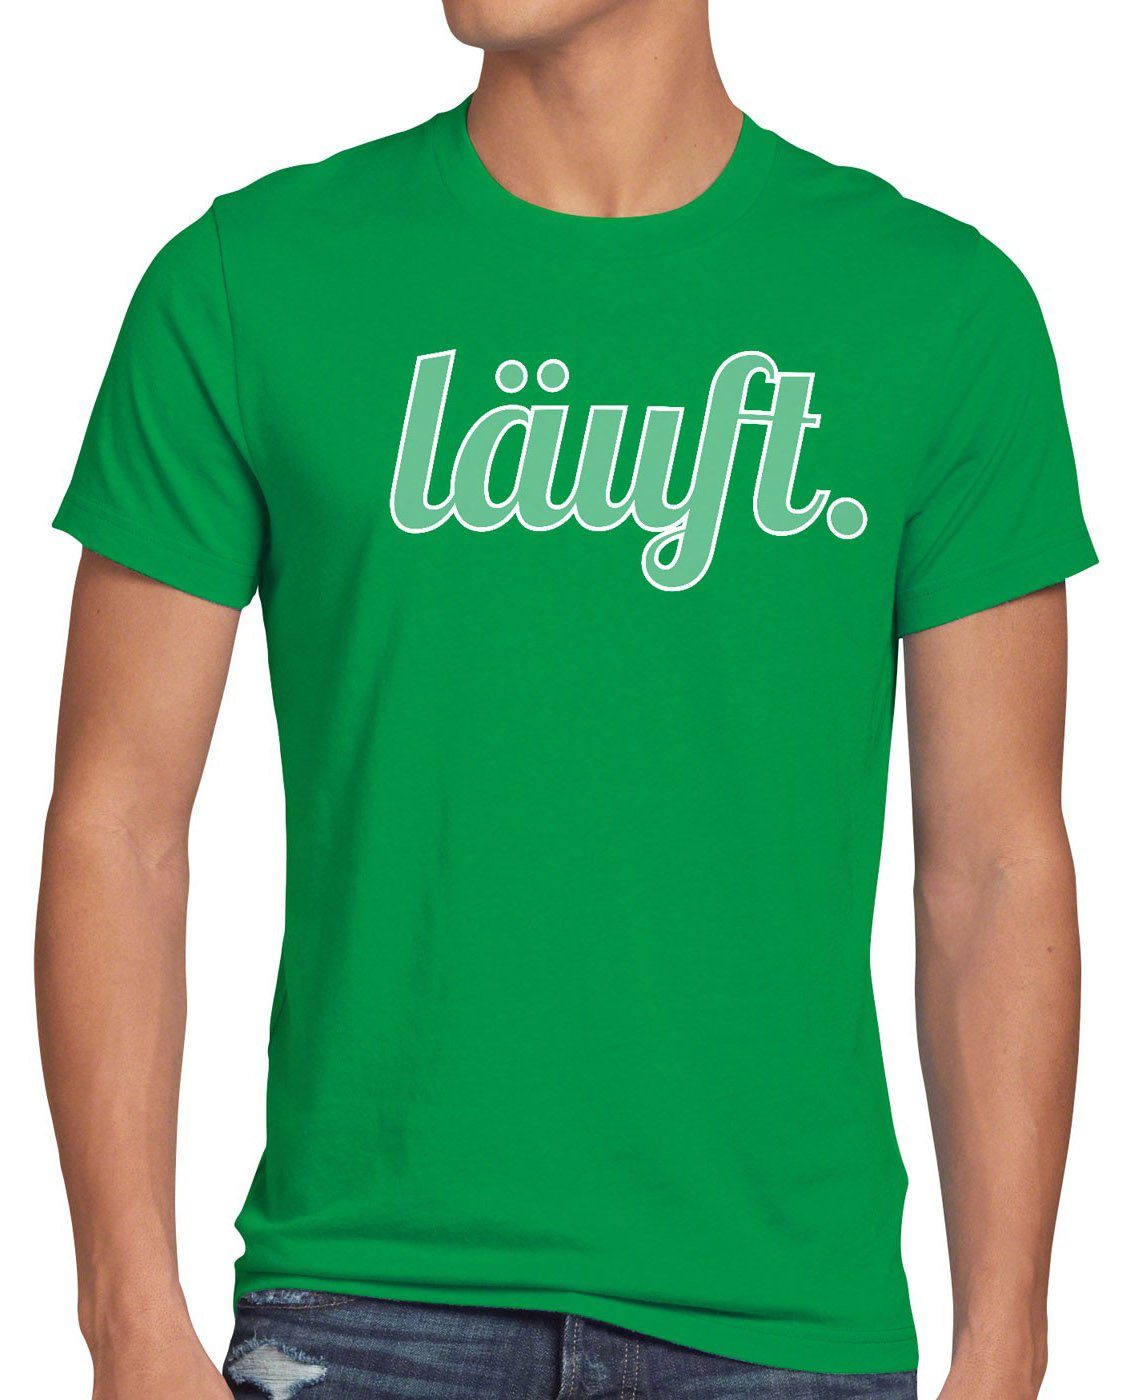 dir kult läuft Funshirt meme Fun bei top Herren mir style3 Print-Shirt Spruchshirt Shirt T-Shirt grün